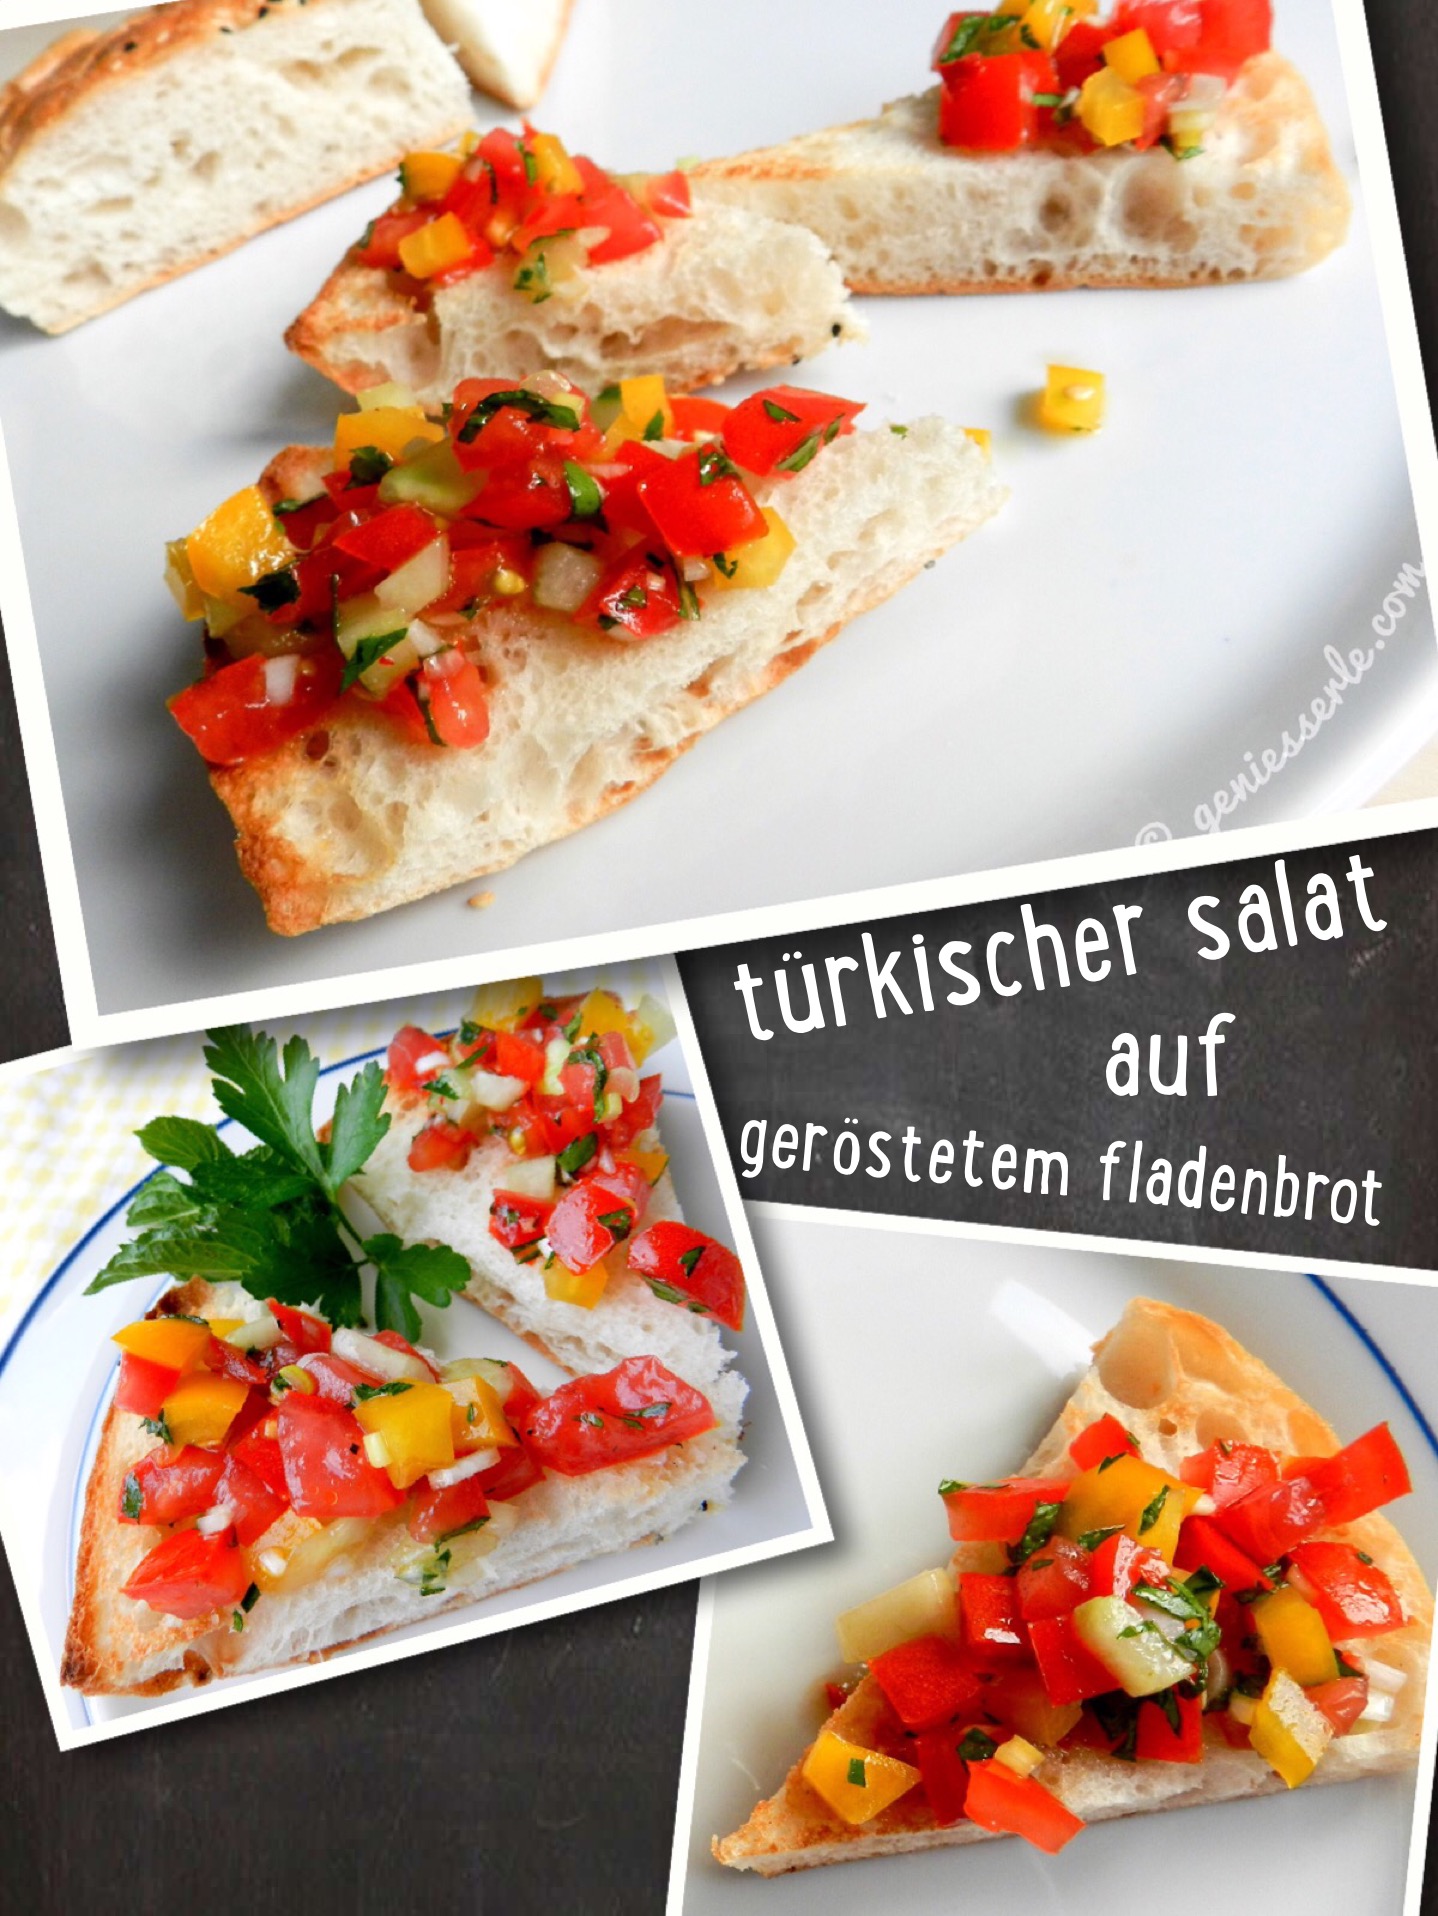 Türkischer Salat auf geröstetem Fladenbrot | geniesserle